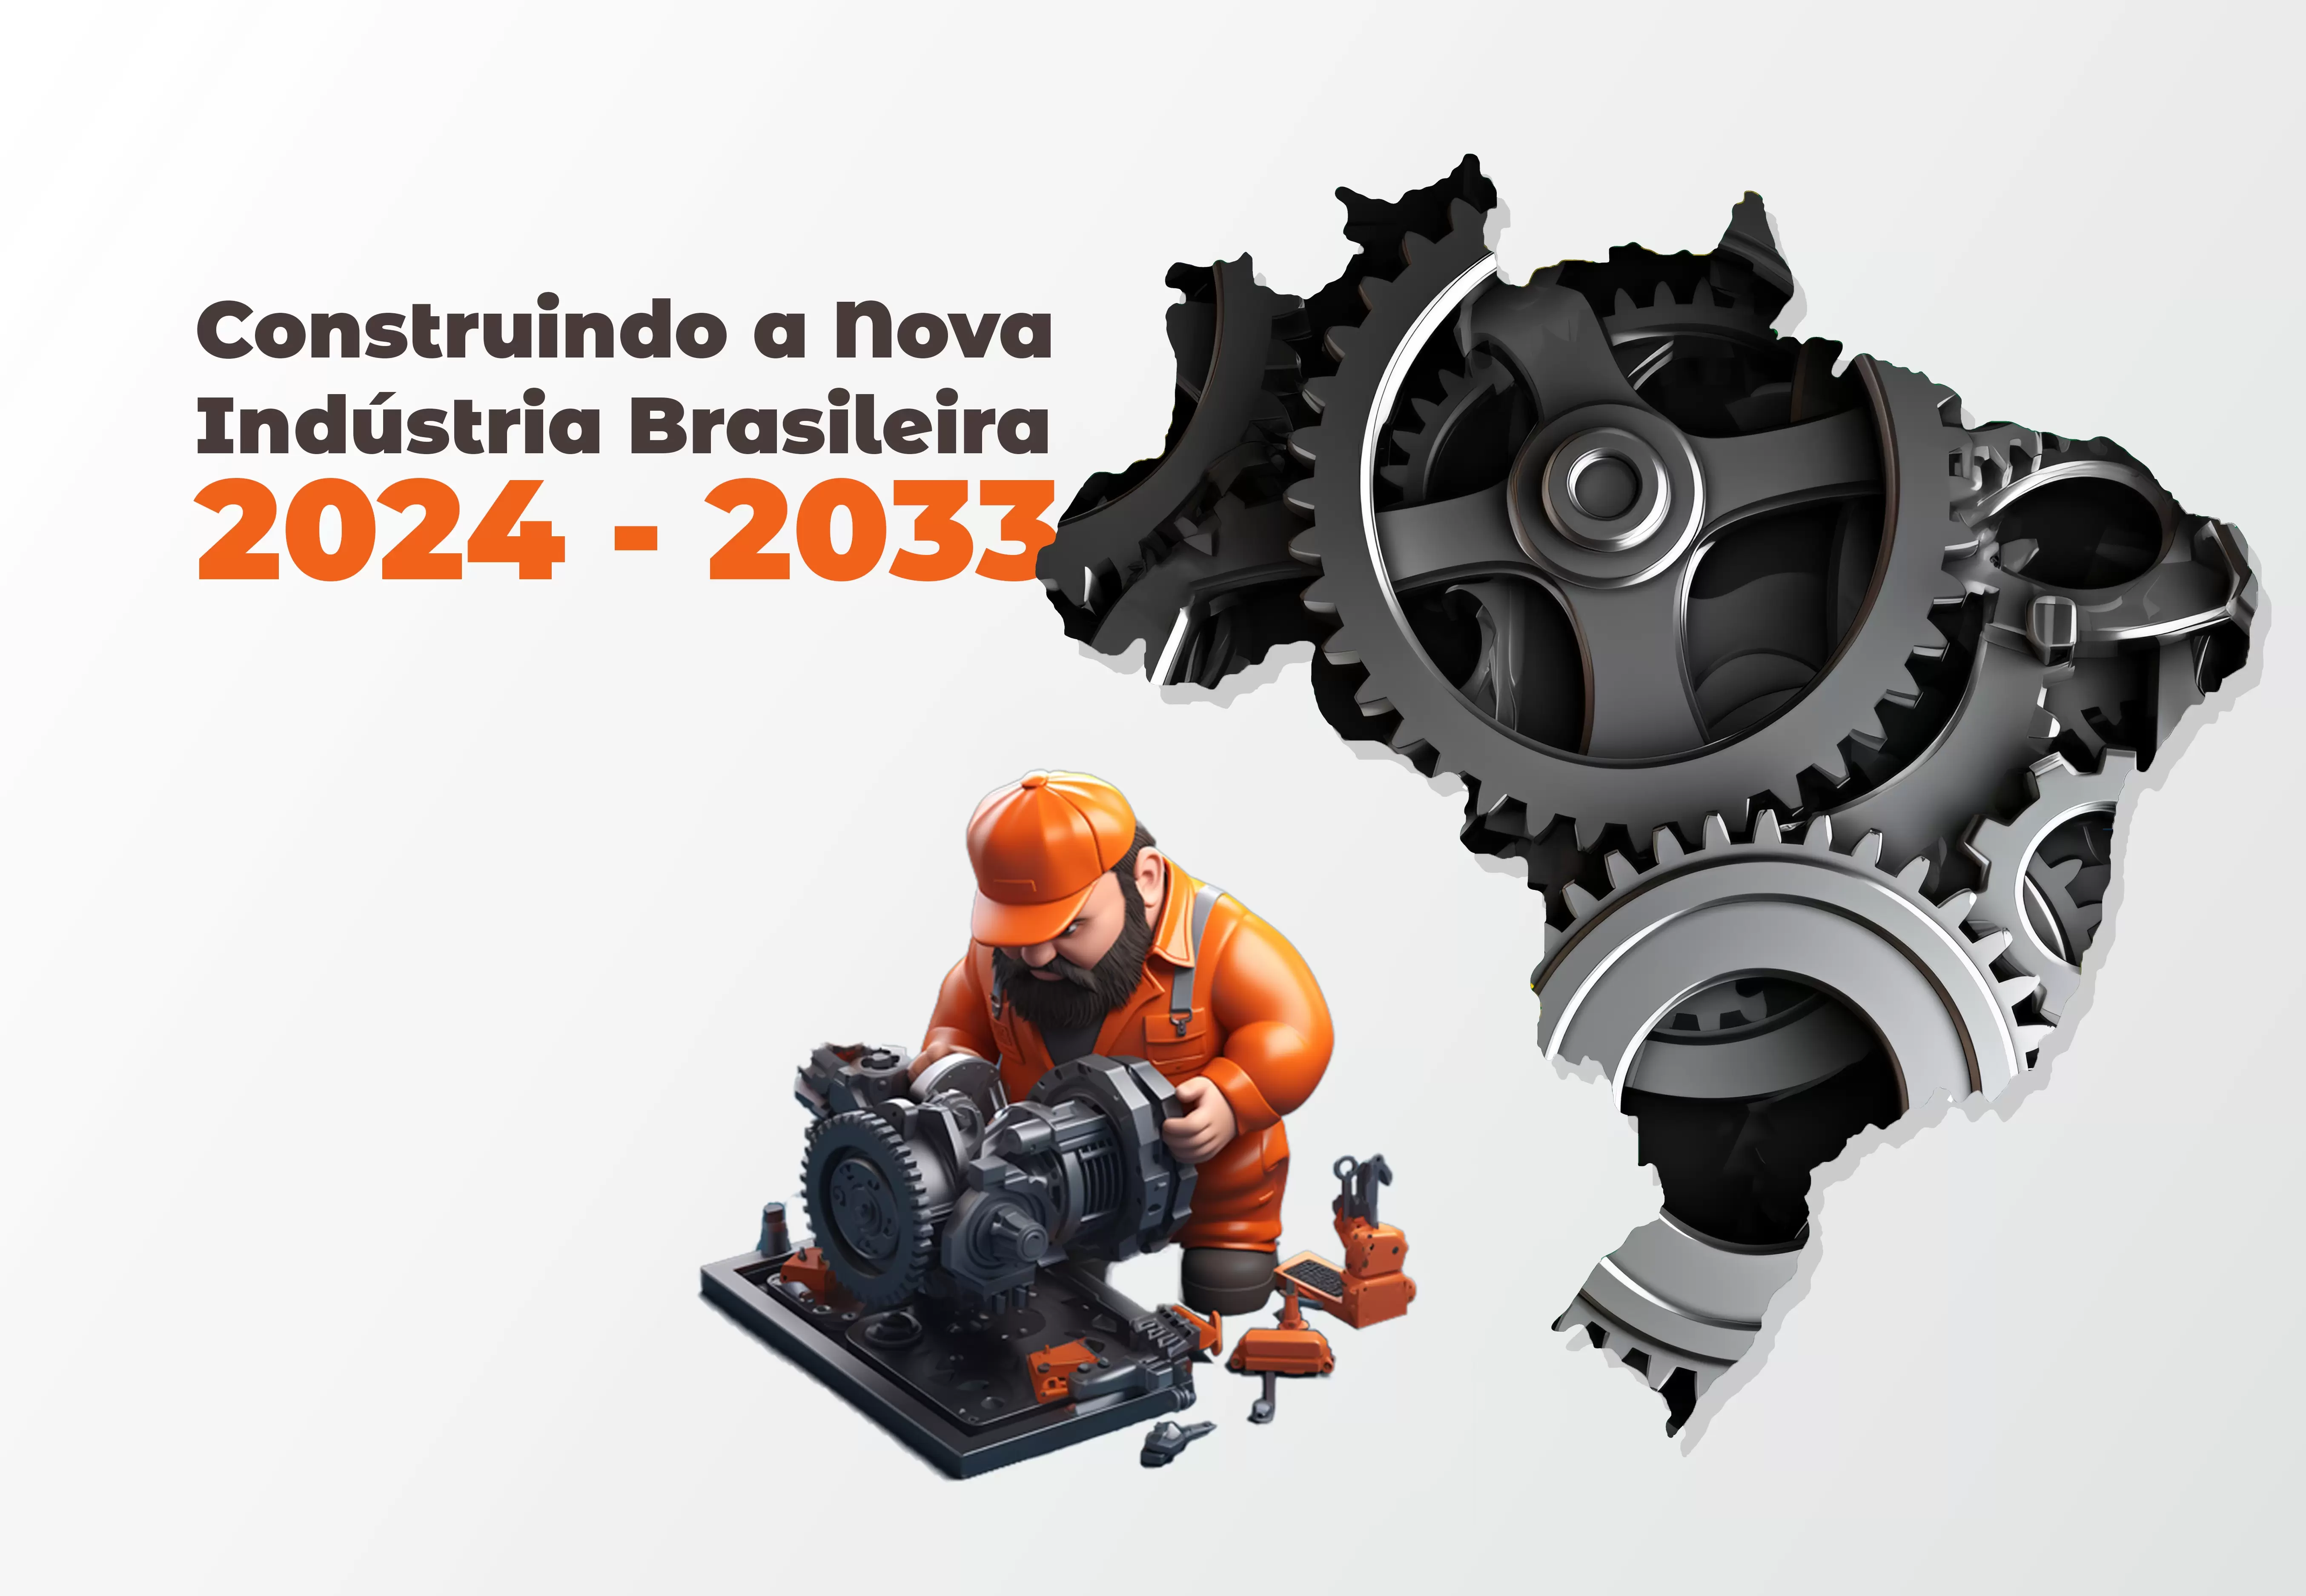 Construindo a Nova Indústria Brasileira 2024-2033